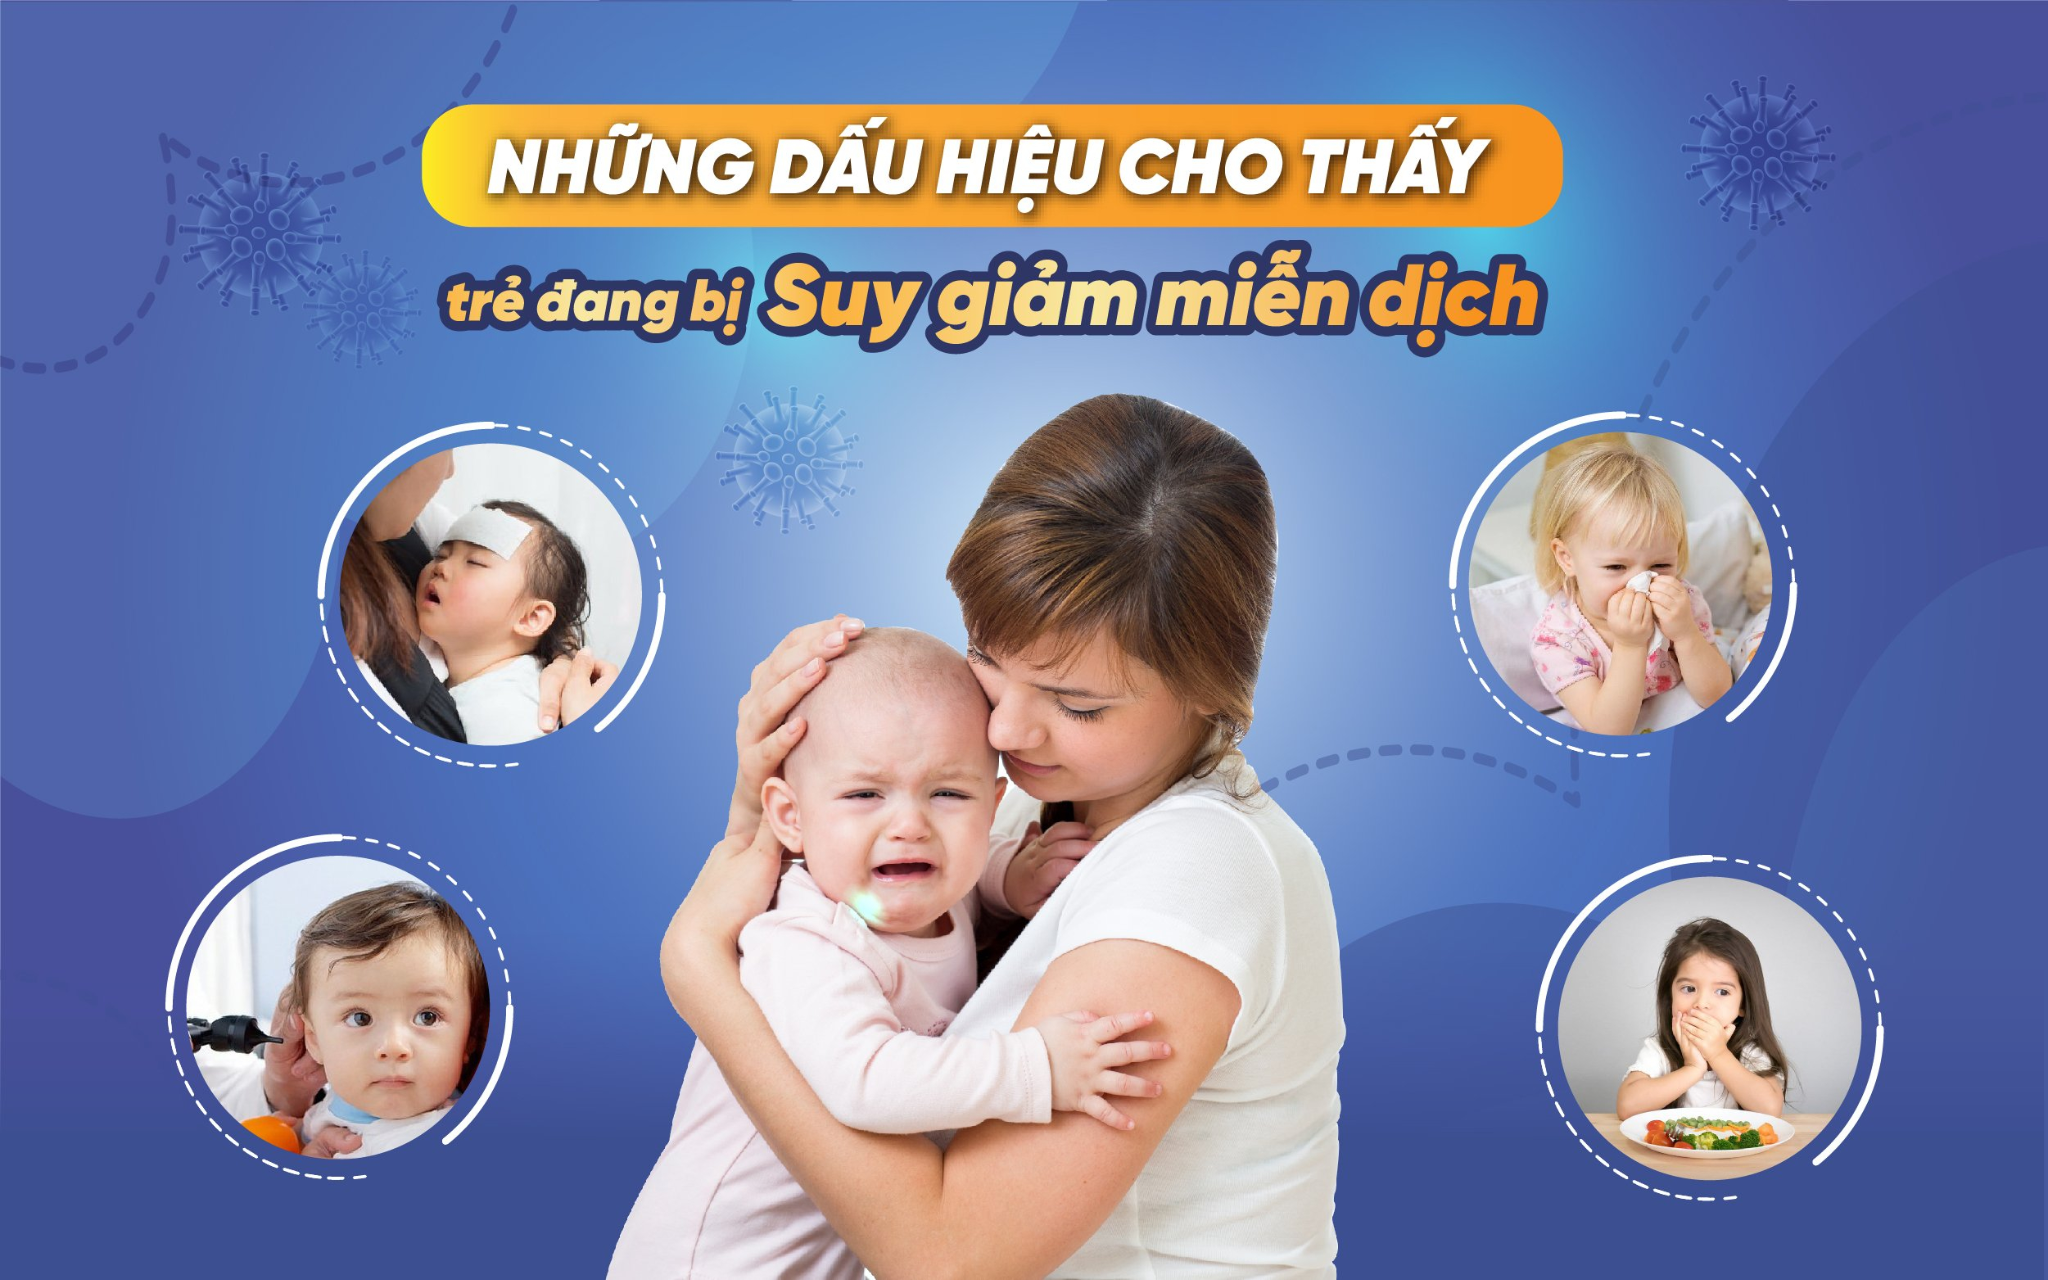 Với đề kháng và trẻ nhỏ, Prudential Việt Nam luôn chuẩn bị sẵn sàng bảo vệ tốt nhất cho các bé yêu của bạn. Cùng với sự chăm sóc và quan tâm đến tất cả các hoàn cảnh đặc biệt, Prudential Việt Nam sẽ là sự lựa chọn tốt nhất cho những gia đình trẻ.